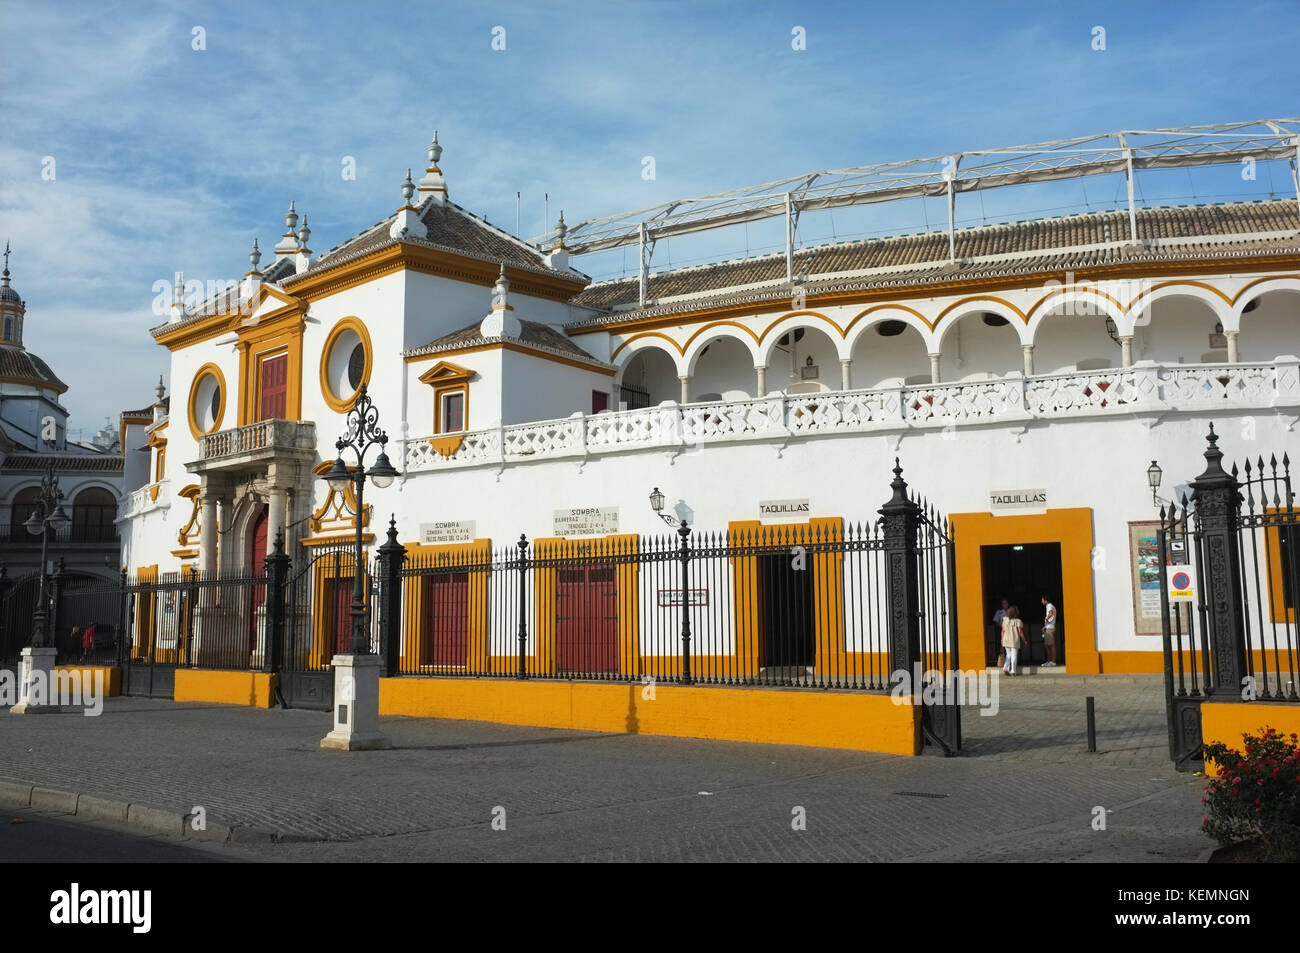 Plaza de toros de la Real Maestranza de Caballería de Sevilla, Seville/Sevilla, Andalucia, Spain, September 2017 Stock Photo